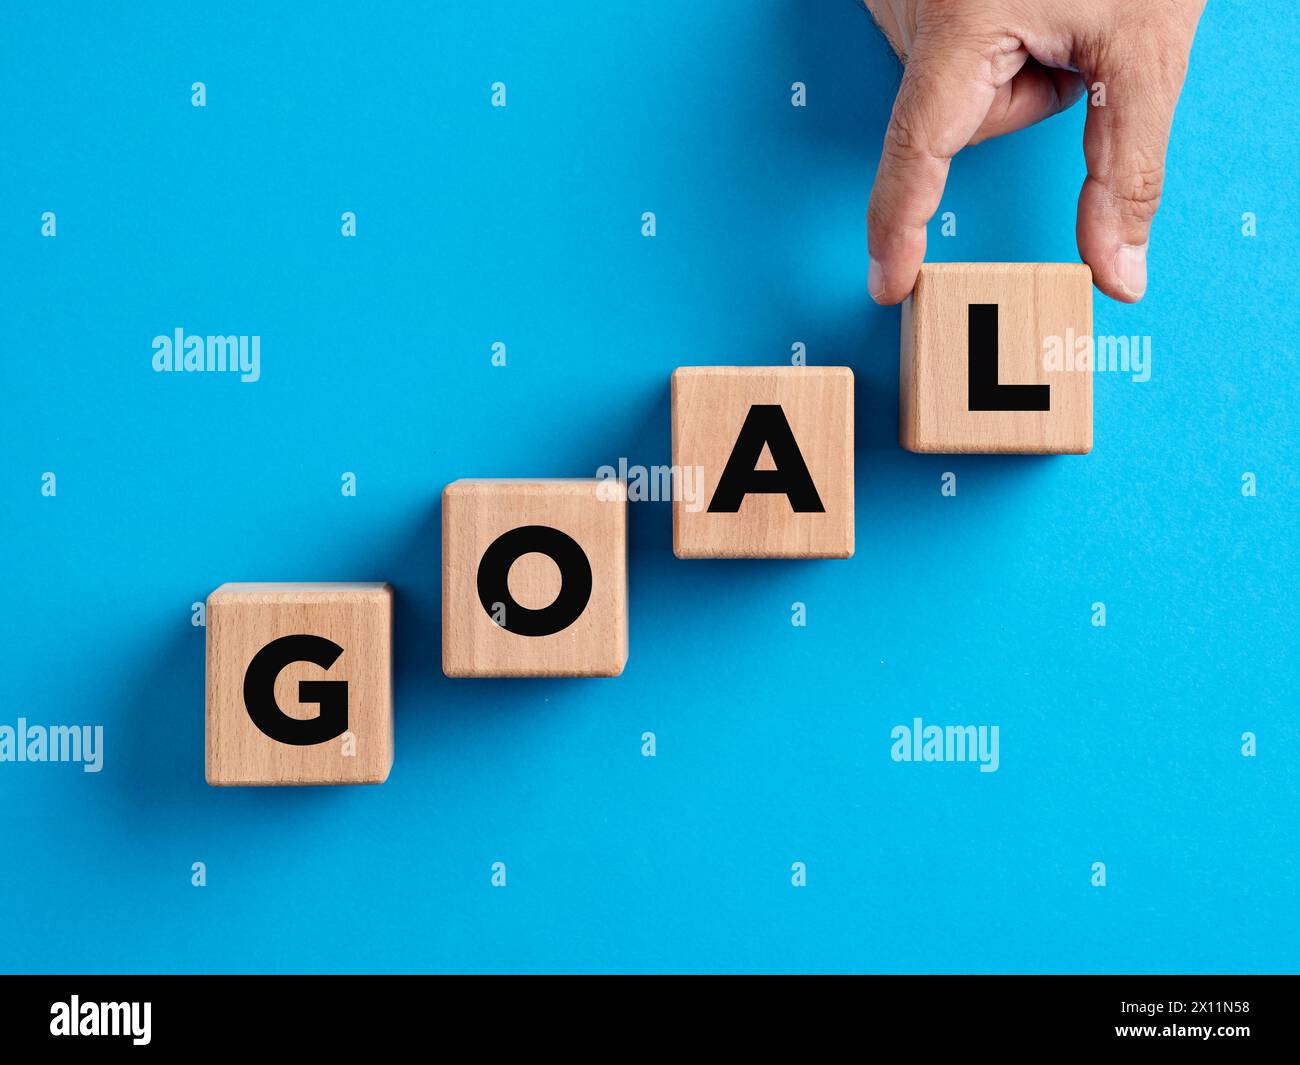 Raggiungimento degli obiettivi, definizione degli obiettivi, obiettivi aziendali, concetti di crescita e successo. La mano prepara i cubi di legno con la parola "goal". Foto Stock